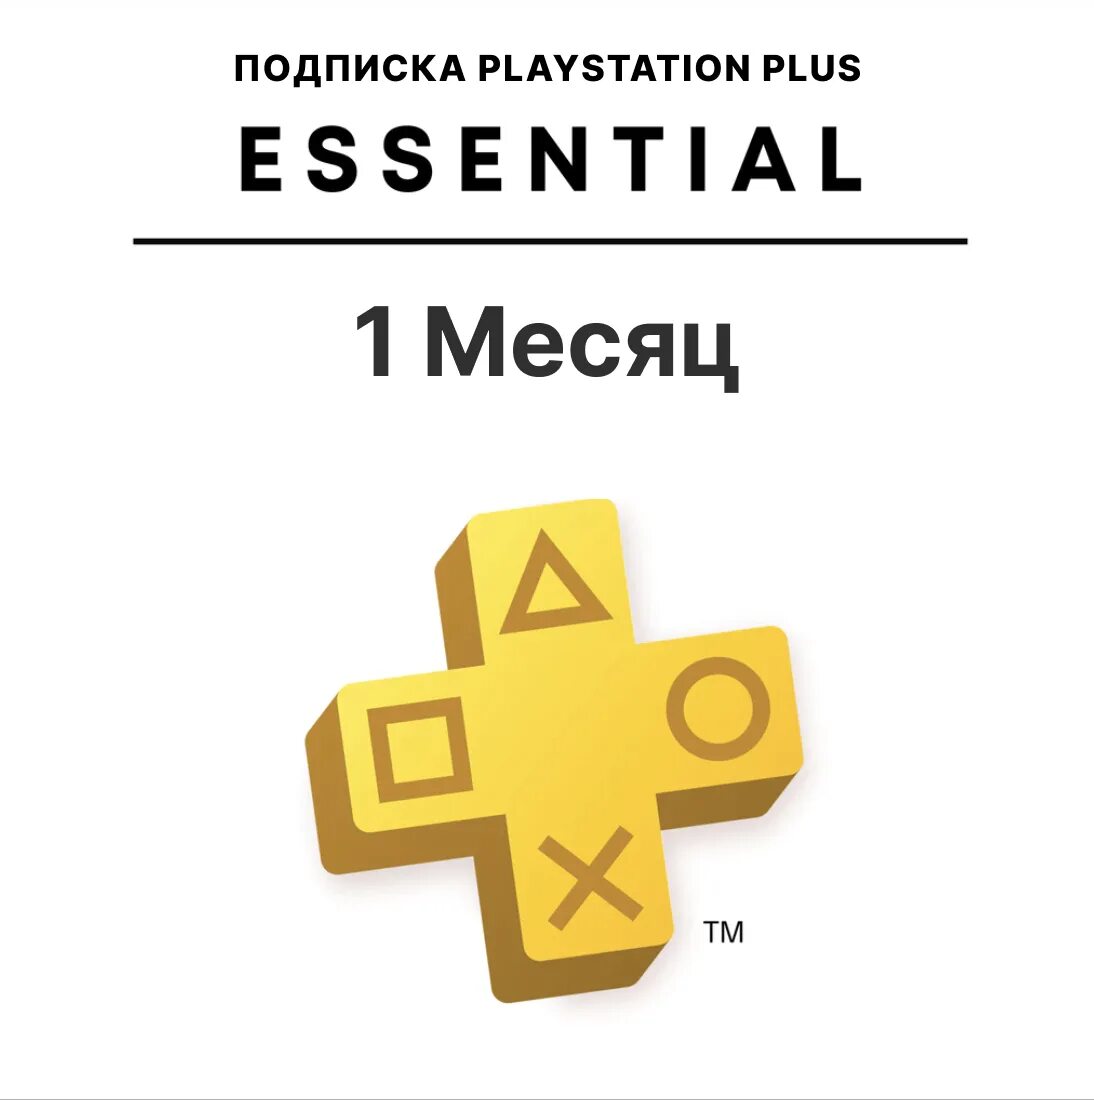 PLAYSTATION Plus Deluxe. Подписка Extra PS Plus 1 month. PS Plus Essential Extra. PLAYSTATION Plus Deluxe 12.